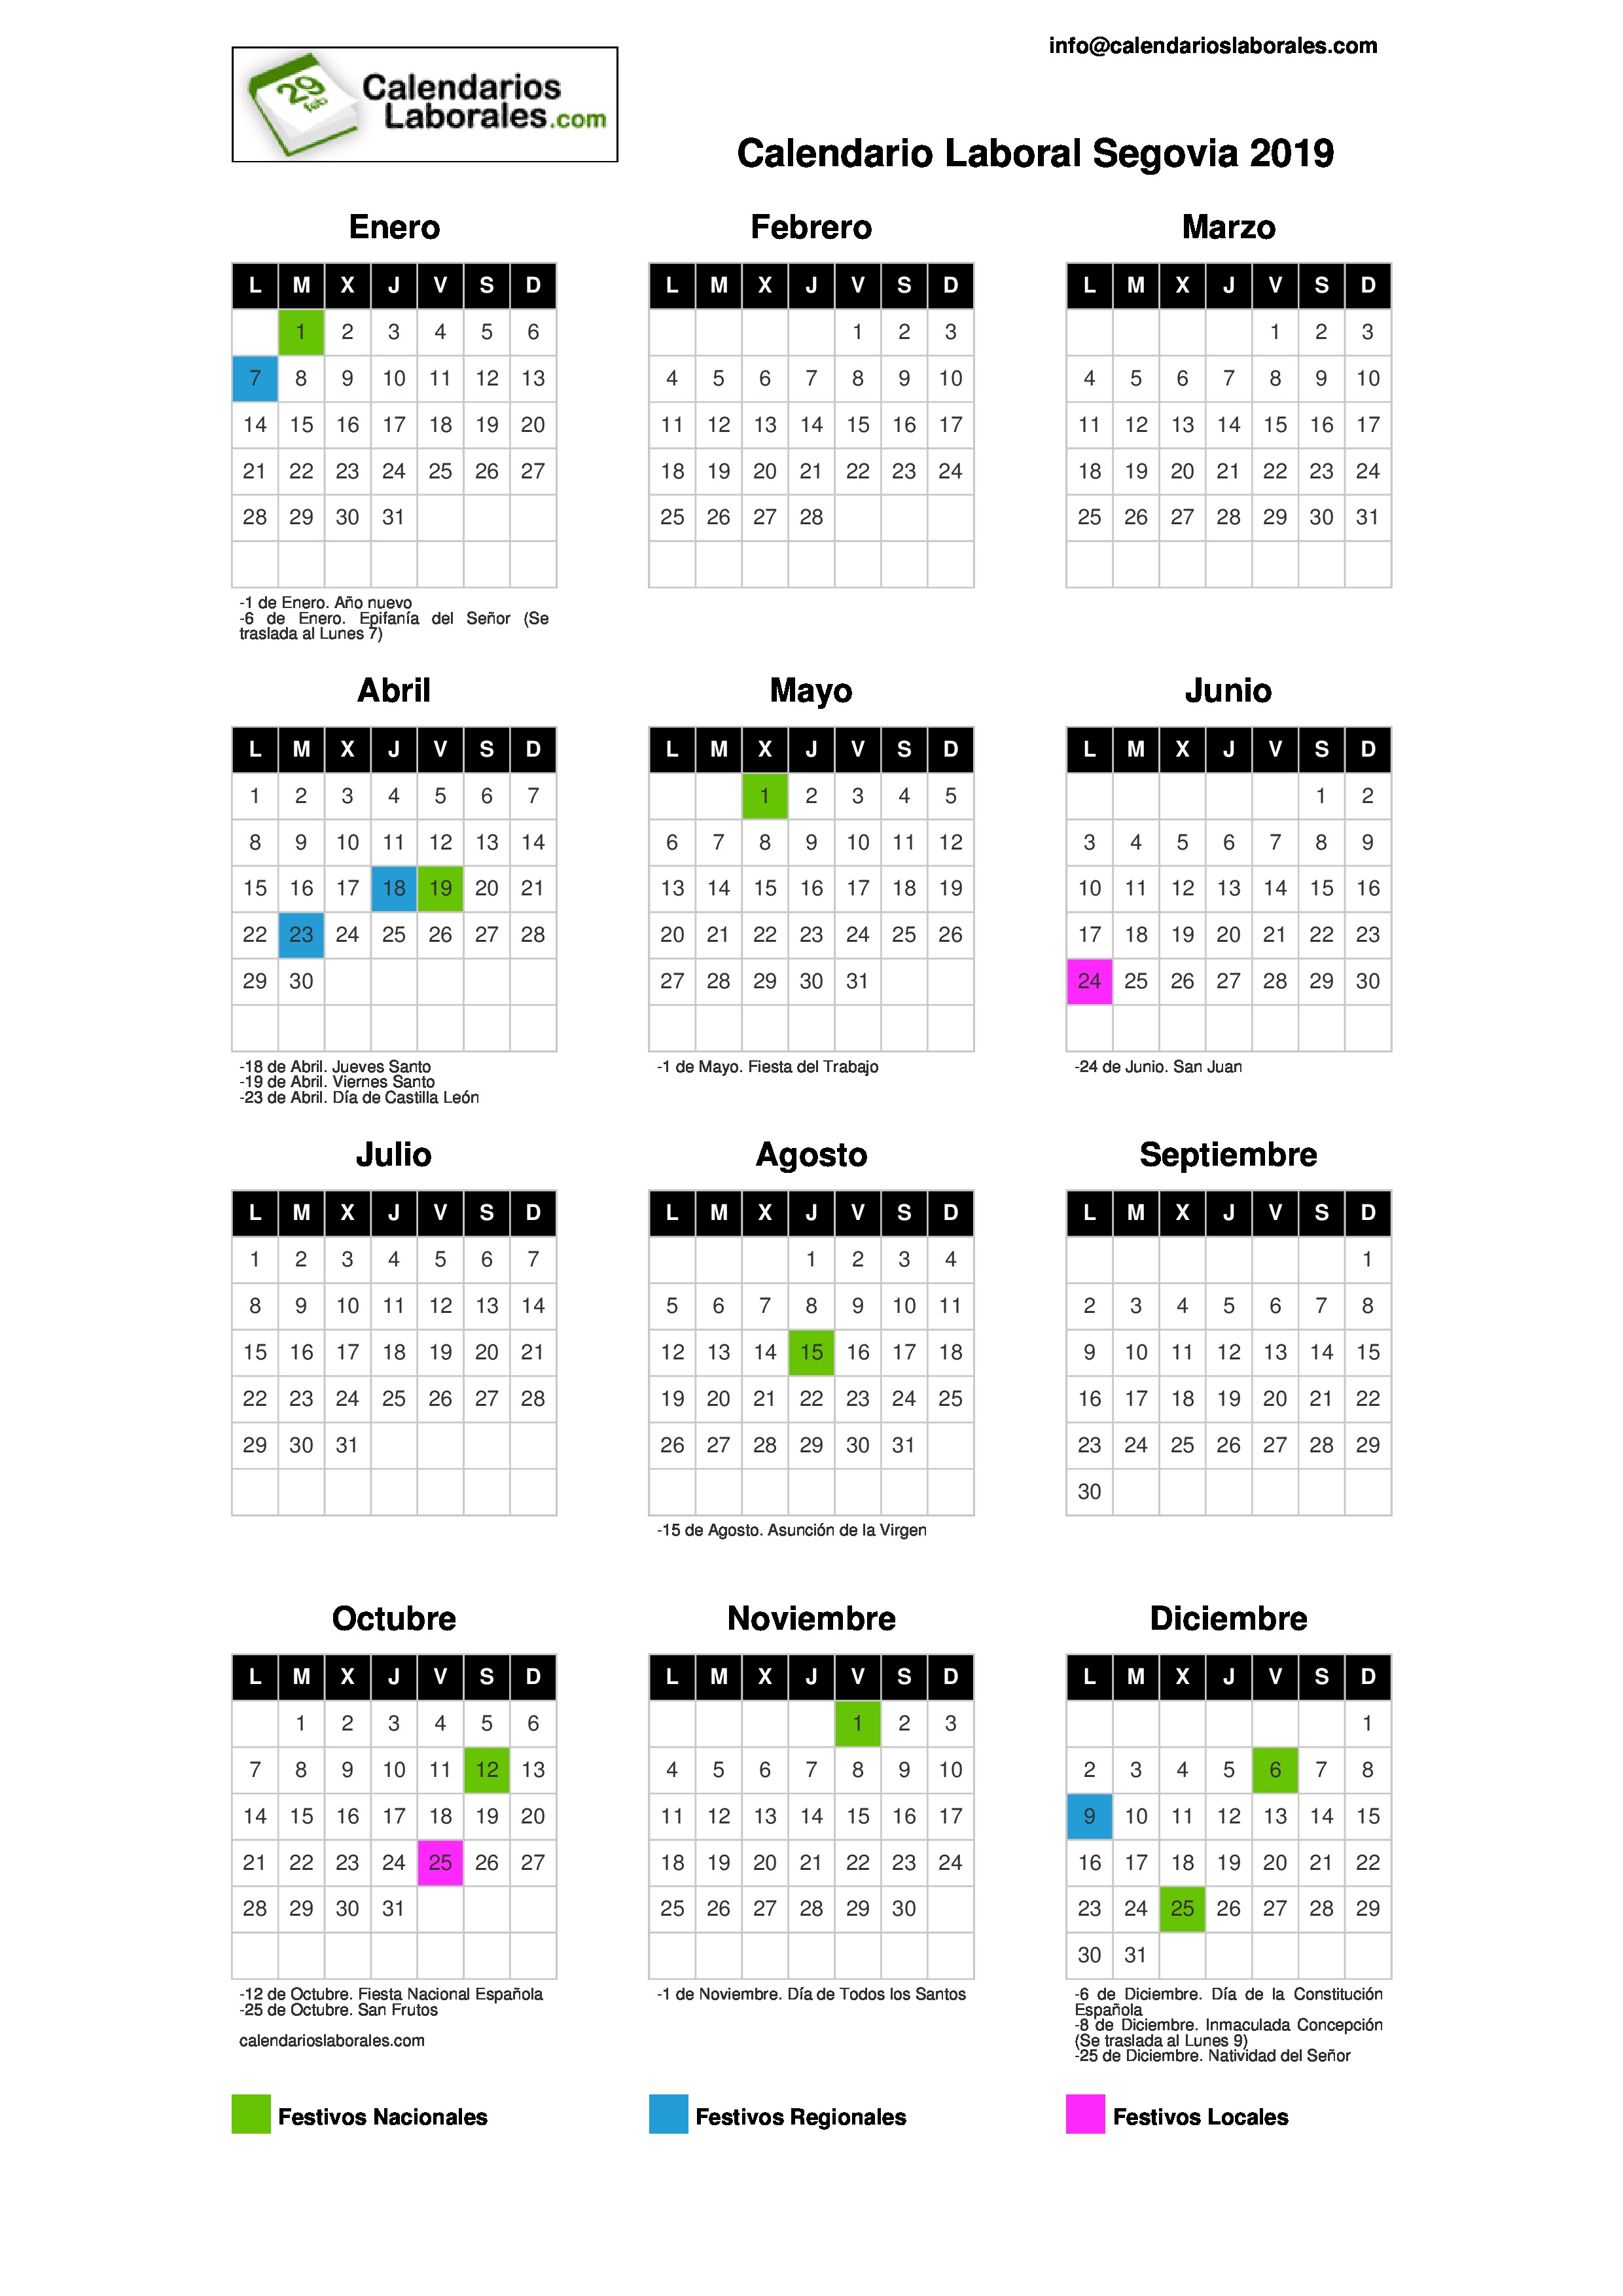 Calendario Laboral Segovia 2019